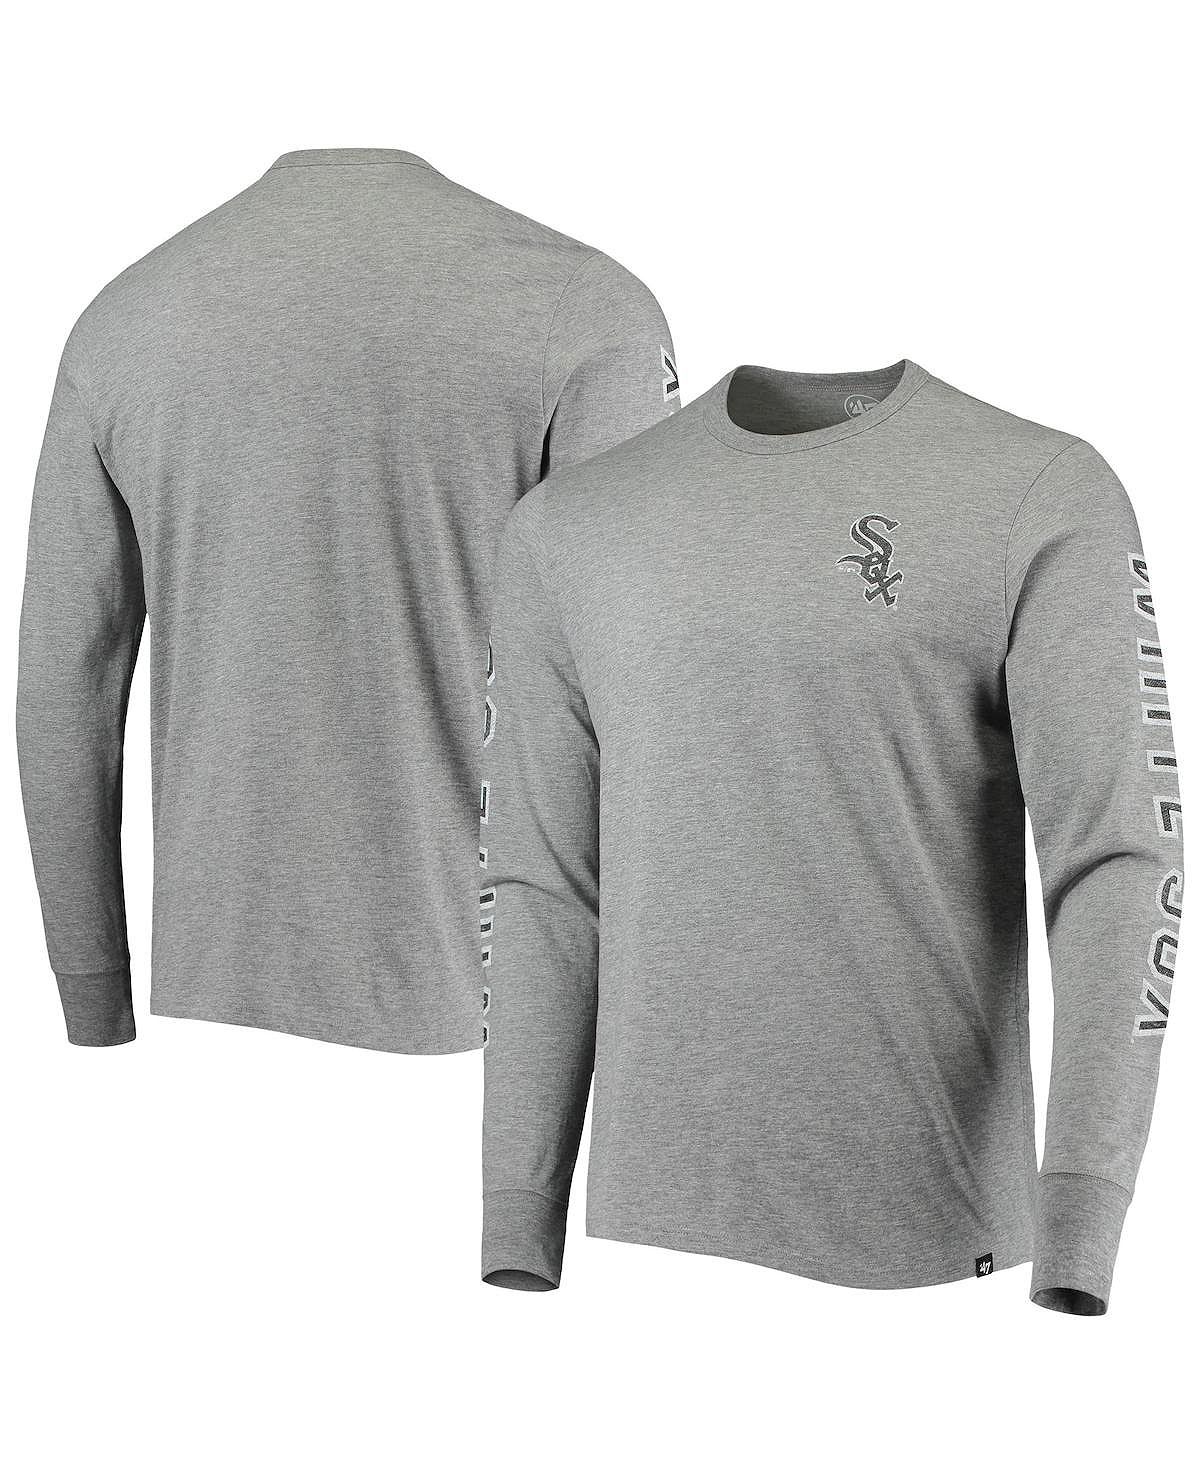 Мужская футболка '47 heathered grey chicago white sox team с длинным рукавом '47 Brand, мульти